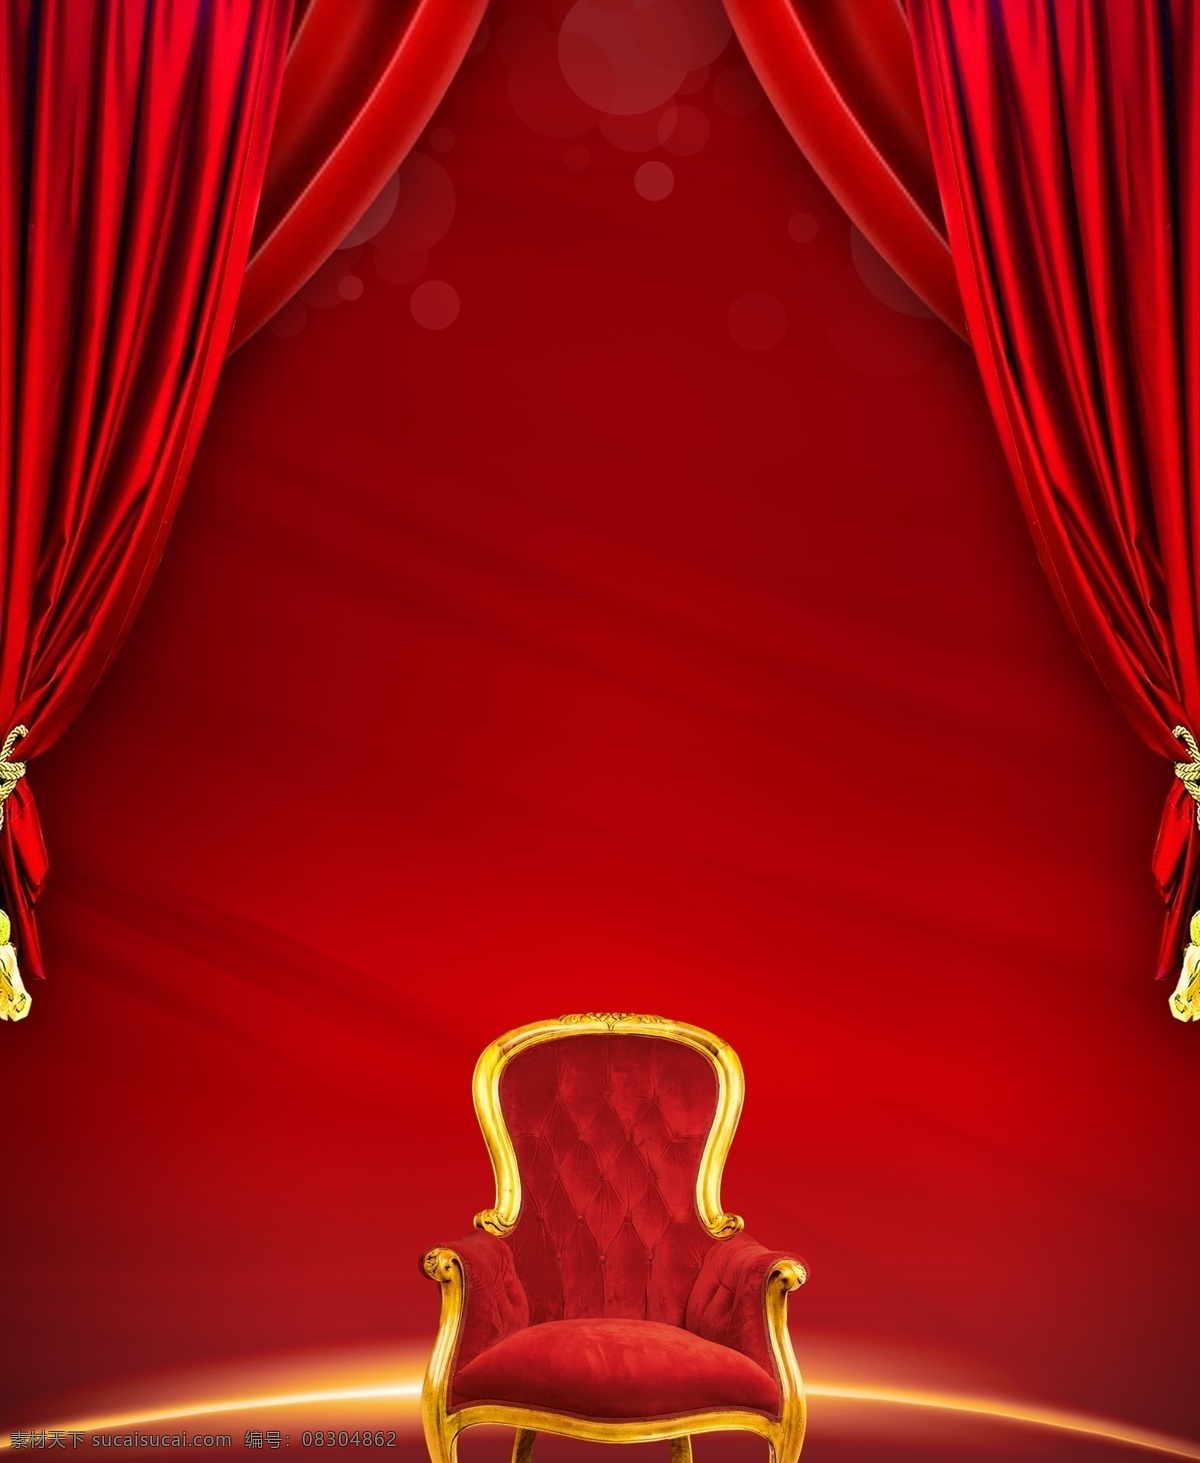 椅子窗 布帘红绸 椅子 窗帘 布帘 开盘 红绸 星光灿烂 背景 地产广告 开盘素材 地产素材 精品素材 dm宣传单